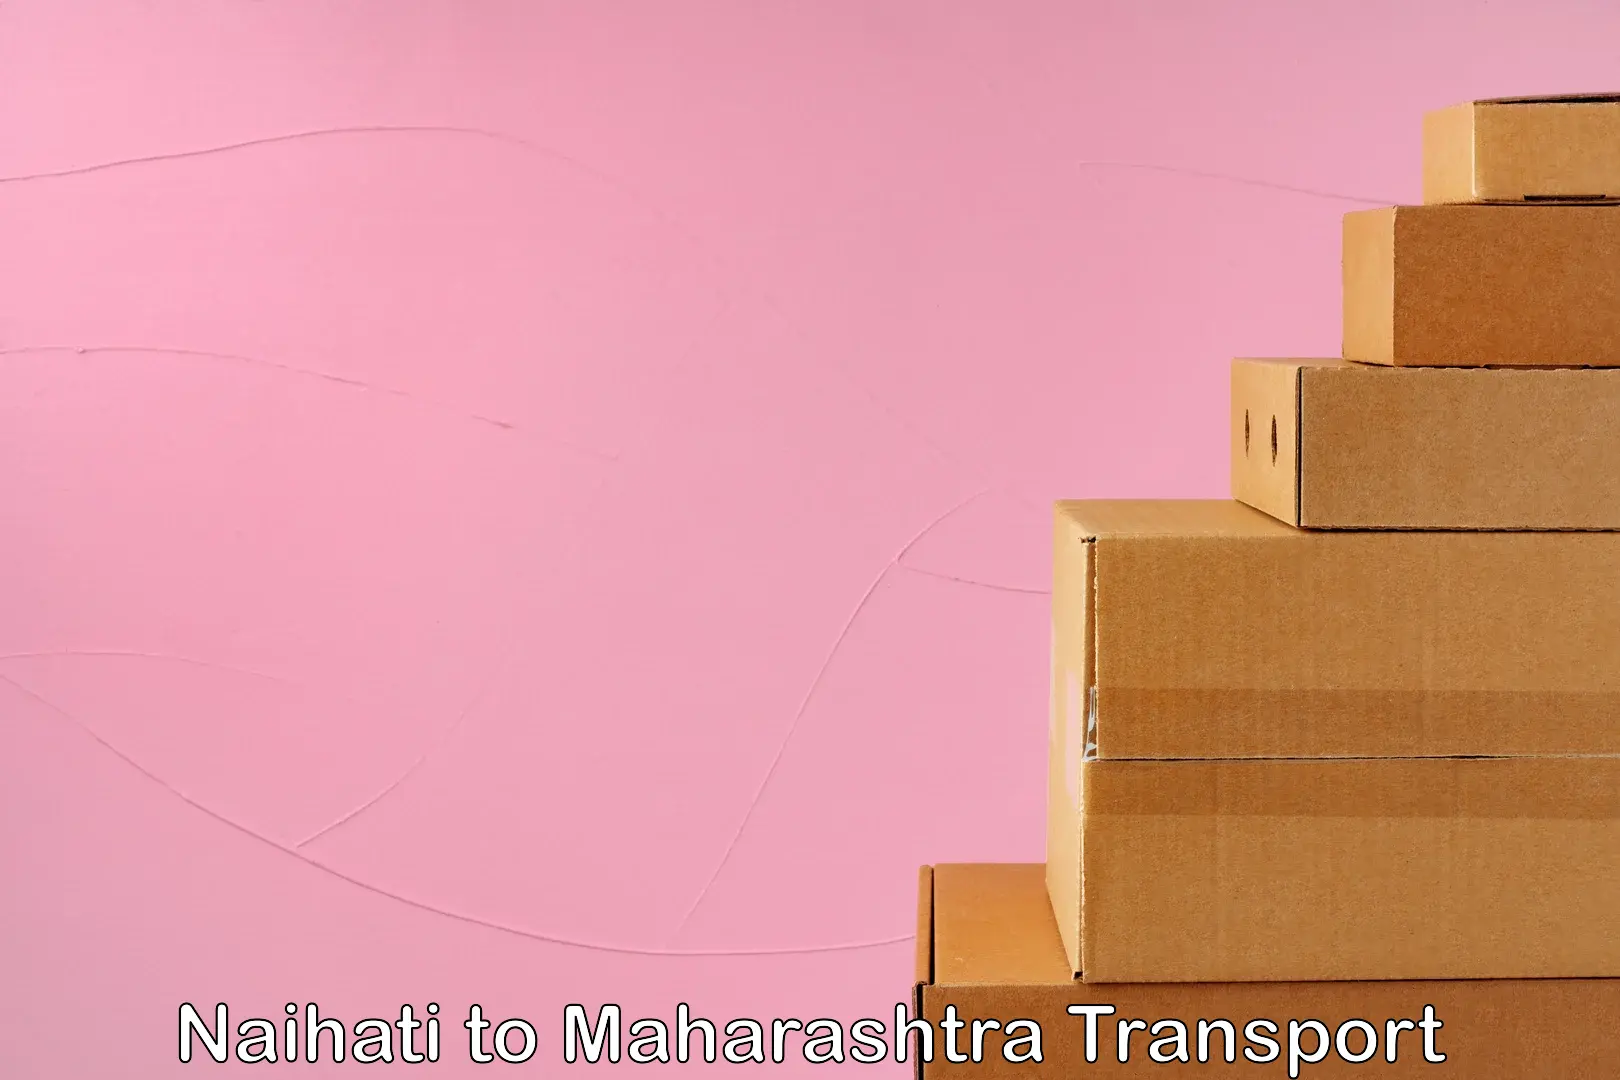 Cargo train transport services in Naihati to Maharashtra